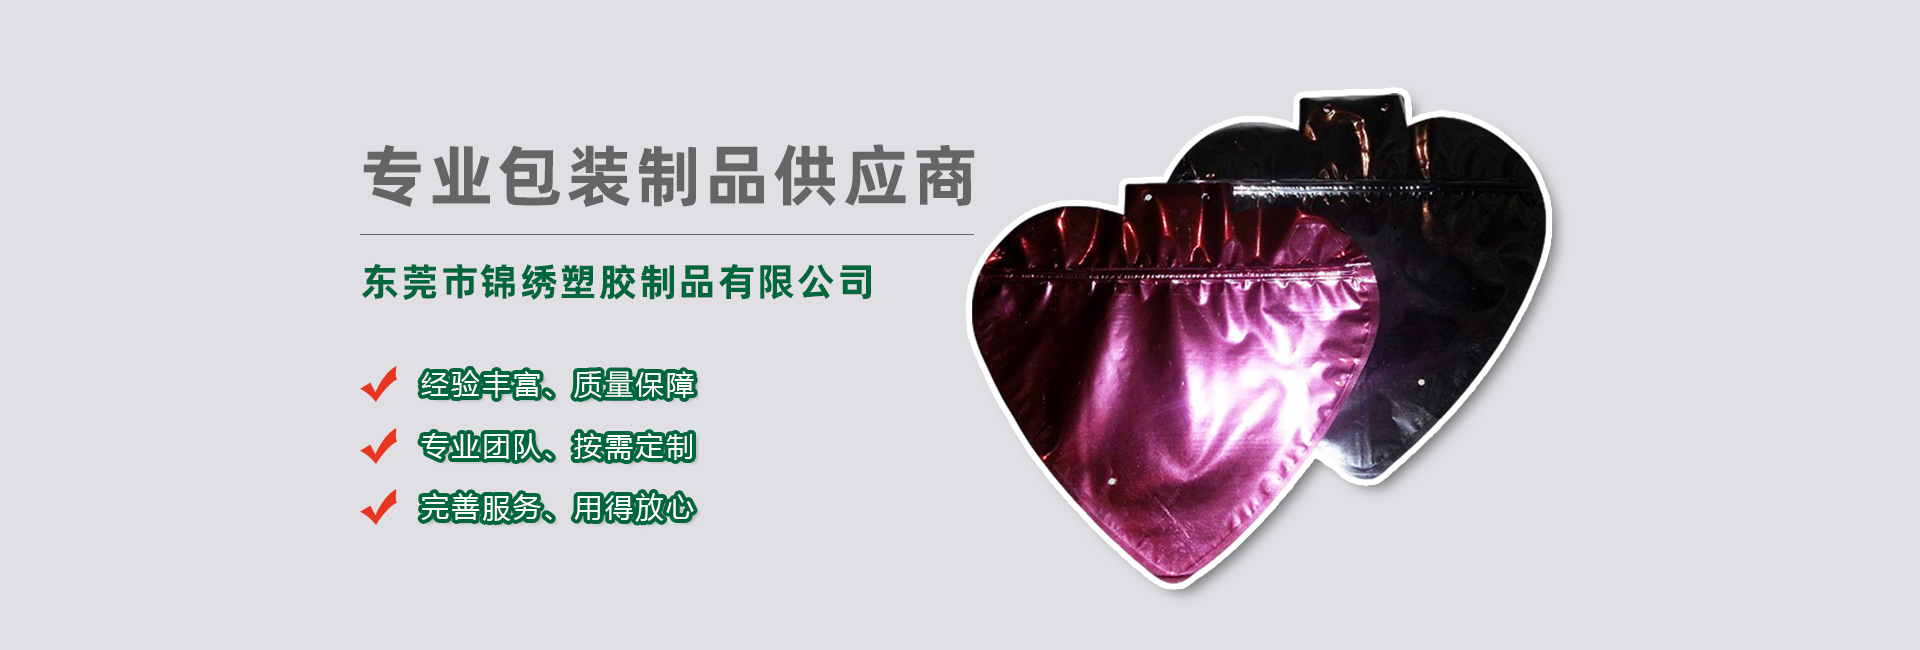 安徽食品袋banner